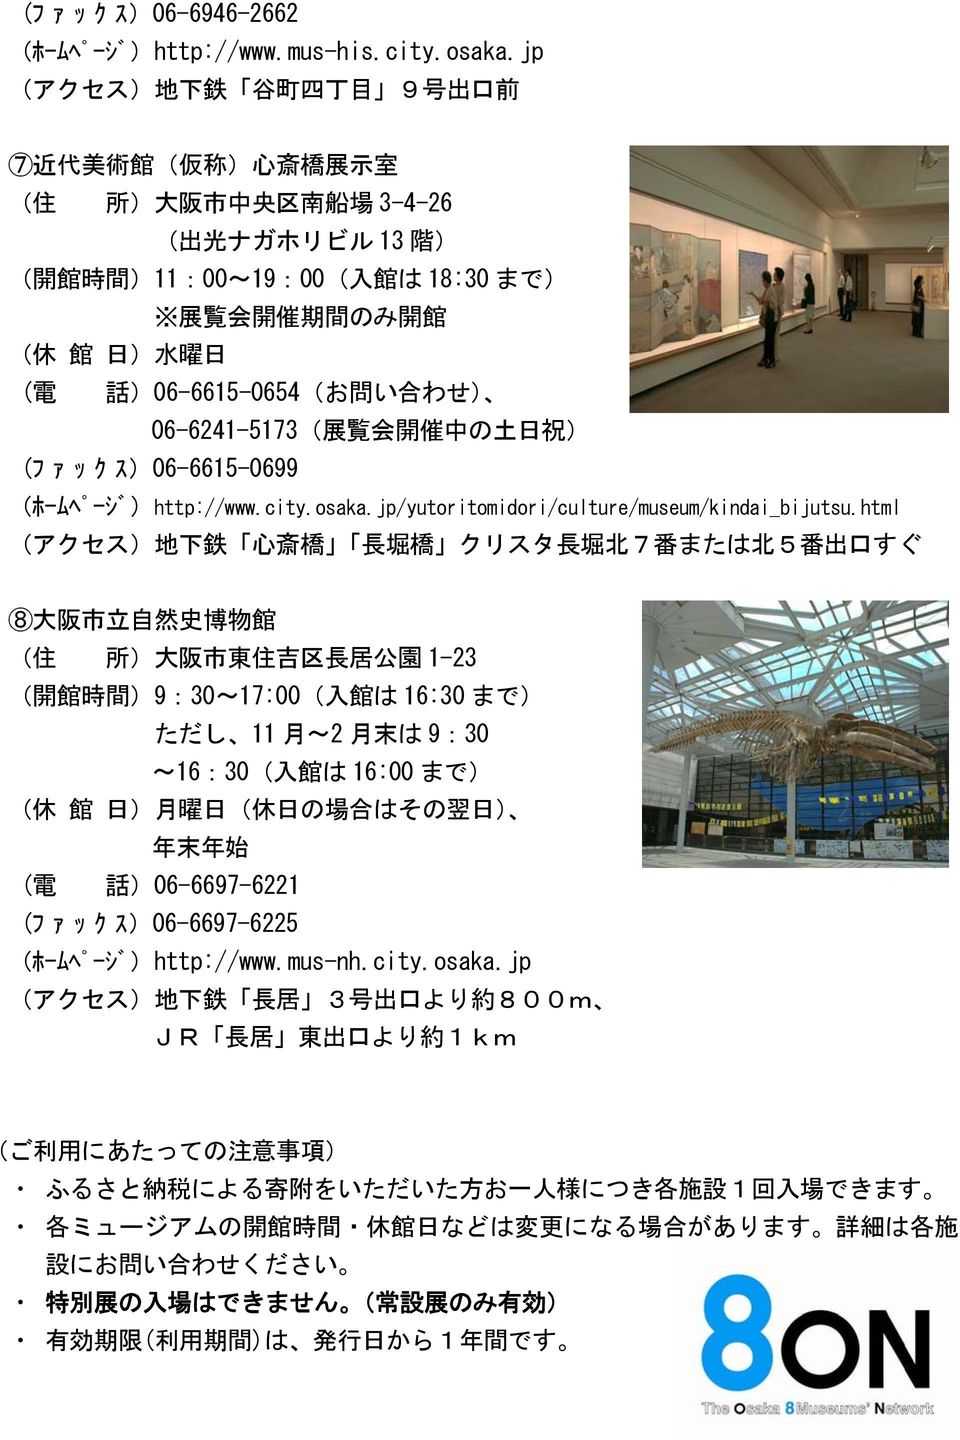 電 話 )06-6615-0654(お 問 い 合 わせ) 06-6241-5173( 展 覧 会 開 催 中 の 土 日 祝 ) (ファックス)06-6615-0699 (ホームヘ ーシ )http://www.city.osaka.jp/yutoritomidori/culture/museum/kindai_bijutsu.